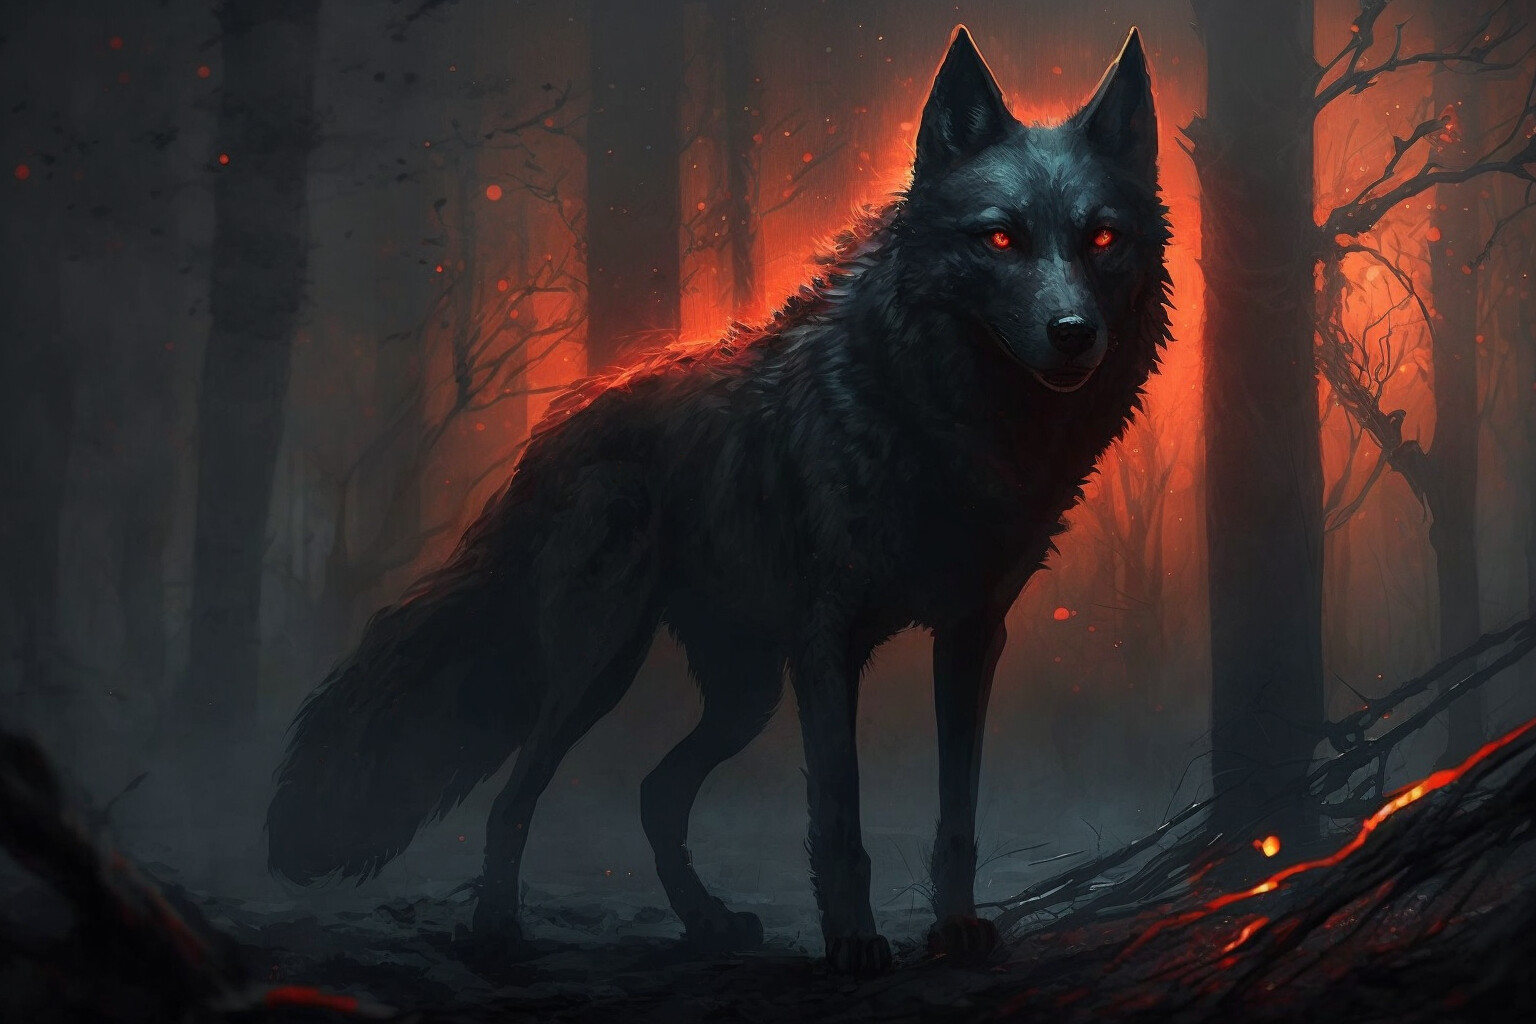 ArtStation - Infernal wolf